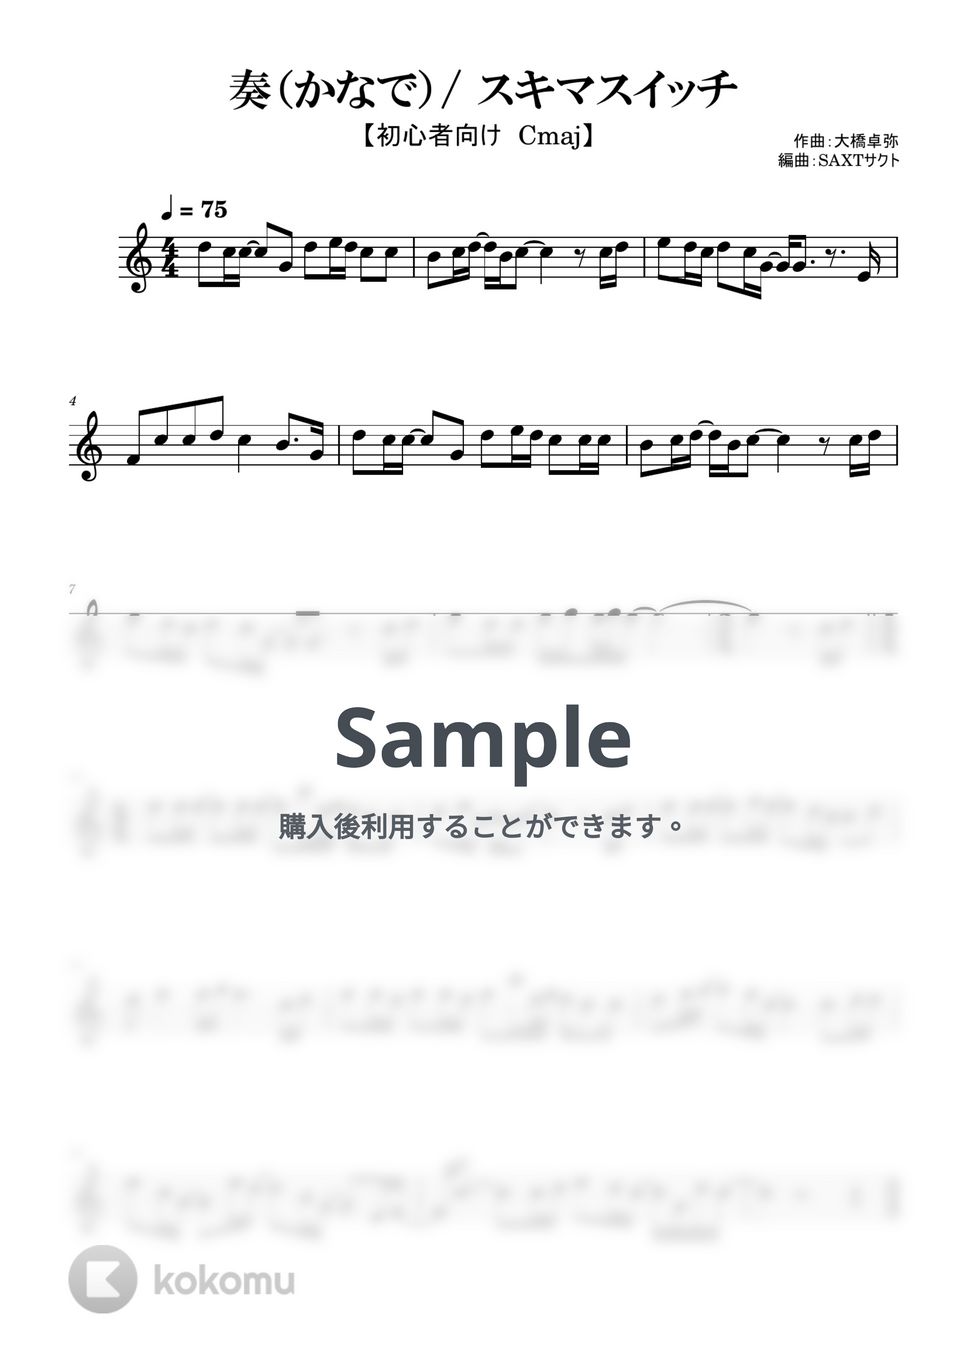 スキマスイッチ - 奏（かなで） (めちゃラク譜) by SAXT